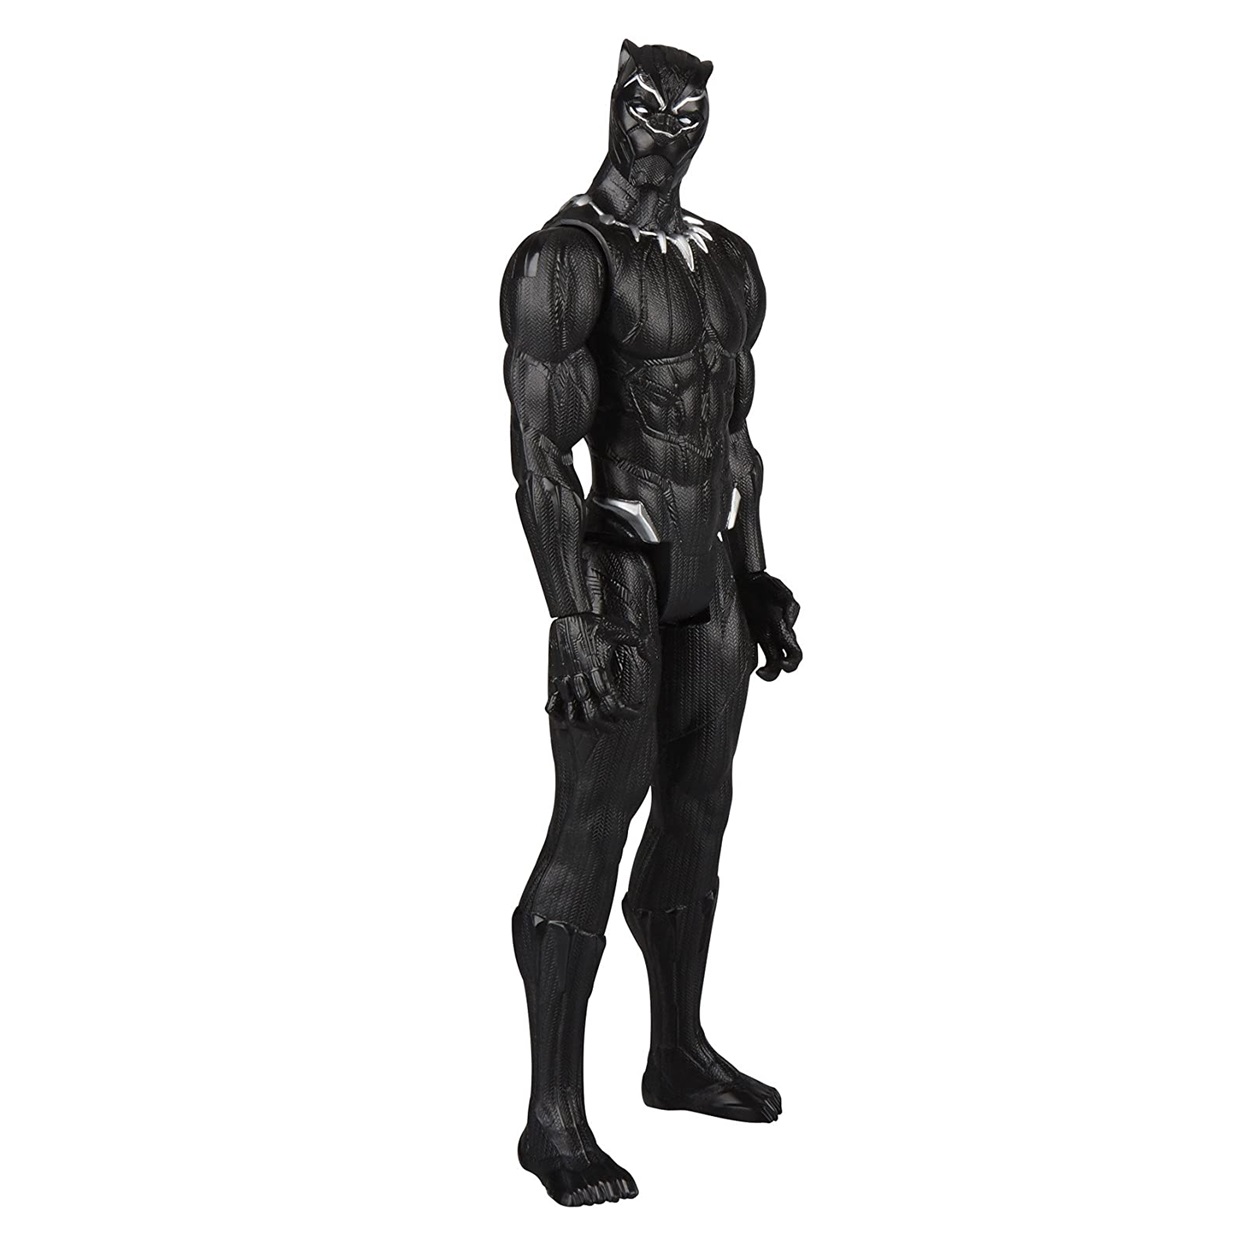 Black Panther Figura Black Panther Movie Titan Hero 12 PuLG